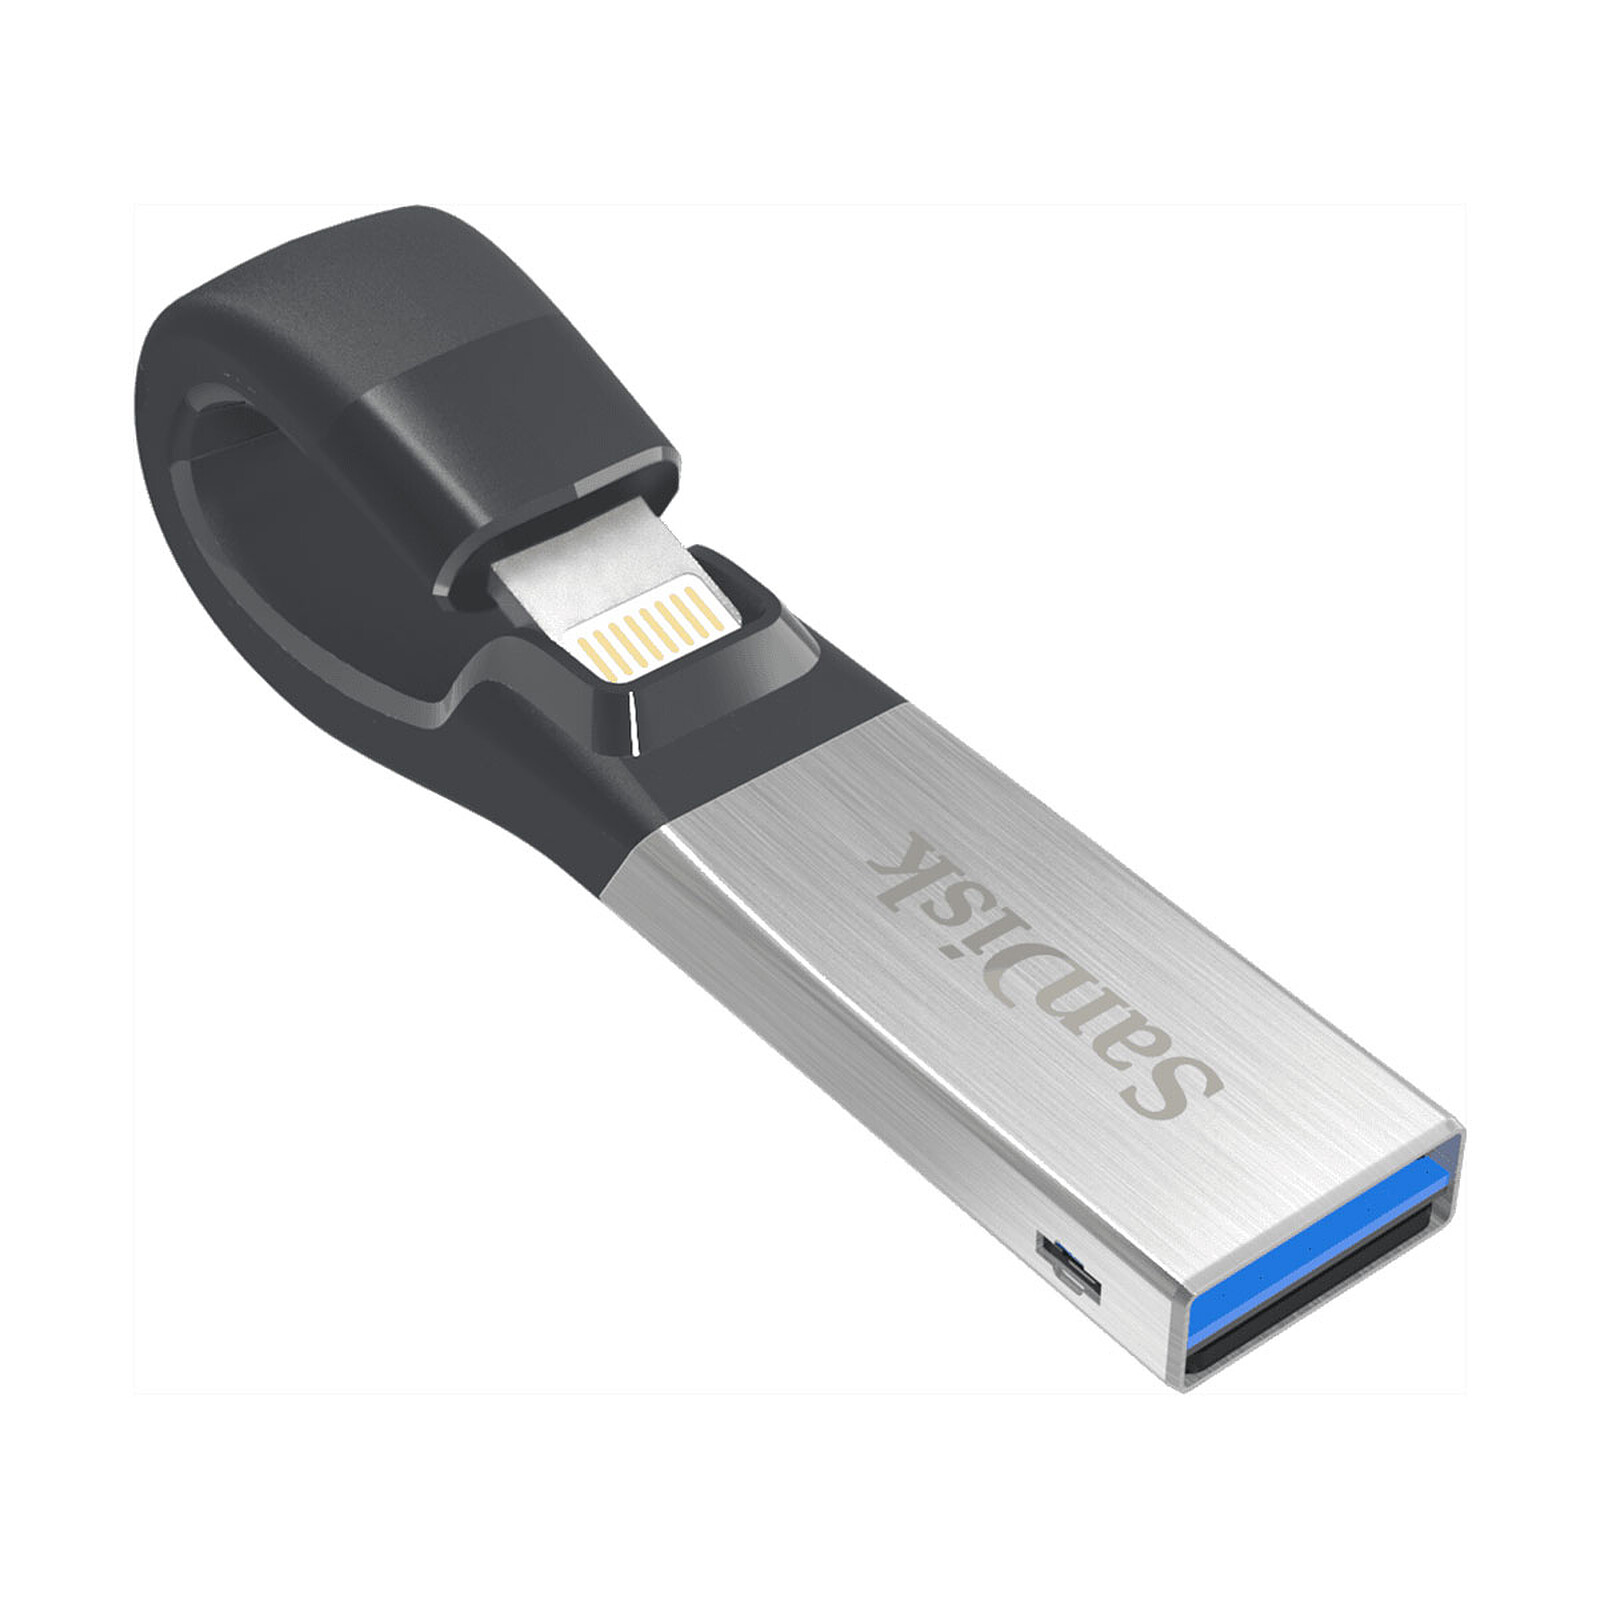 Utilisation d'une clé USB cryptée avec un iPhone ou un iPad - Kingston  Technology